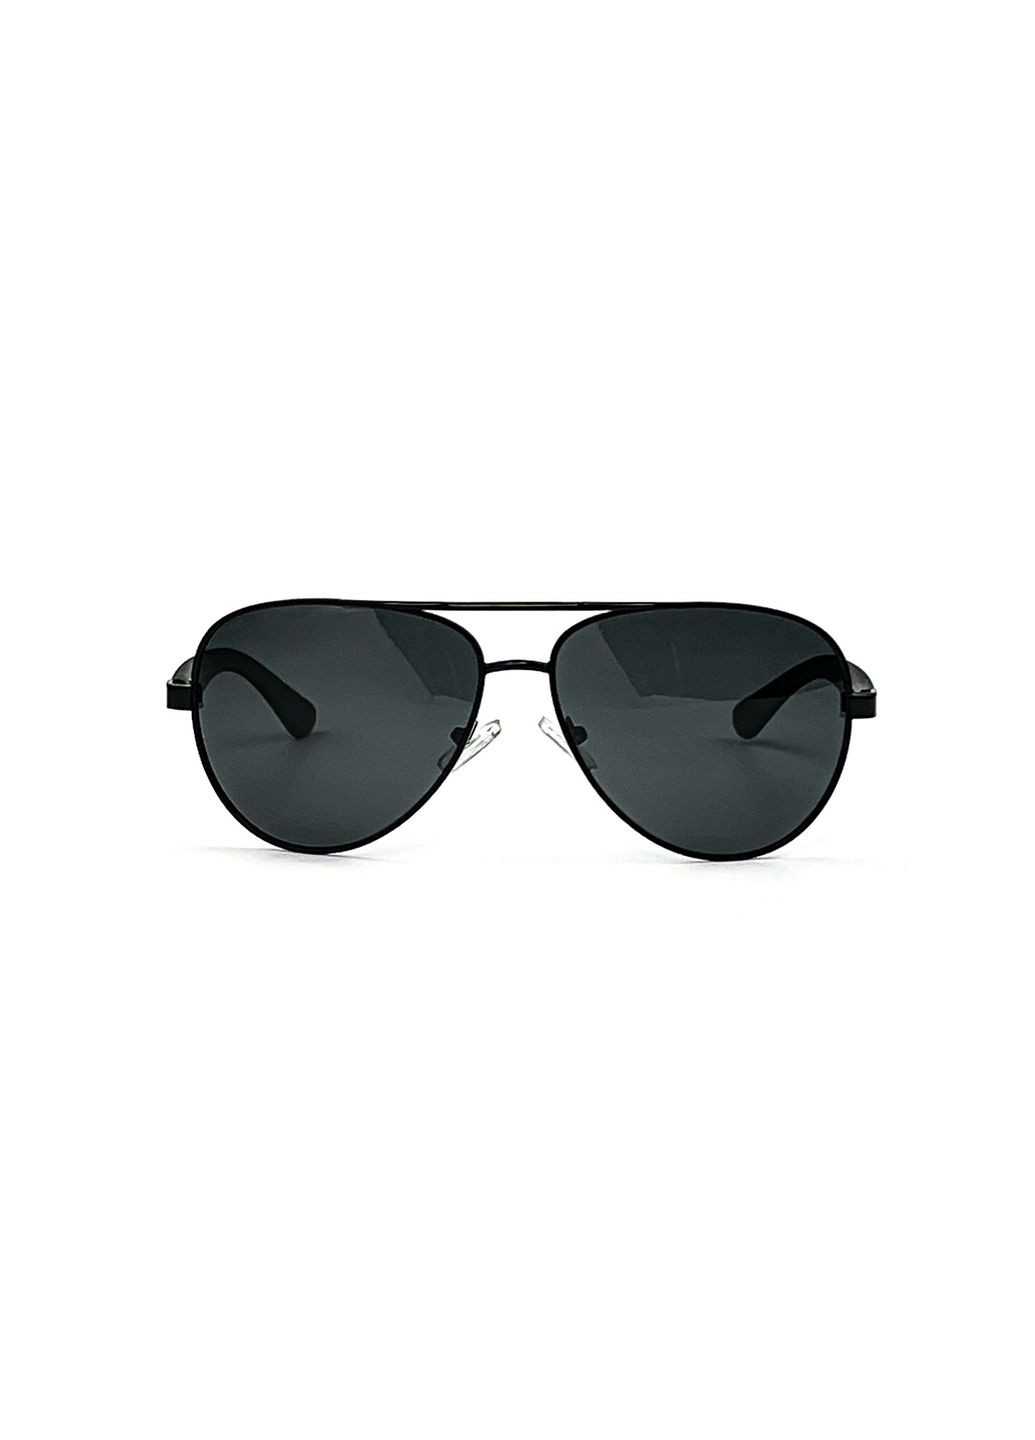 Солнцезащитные очки с поляризацией Авиаторы мужские 469-075 LuckyLOOK 469-075m (294336971)